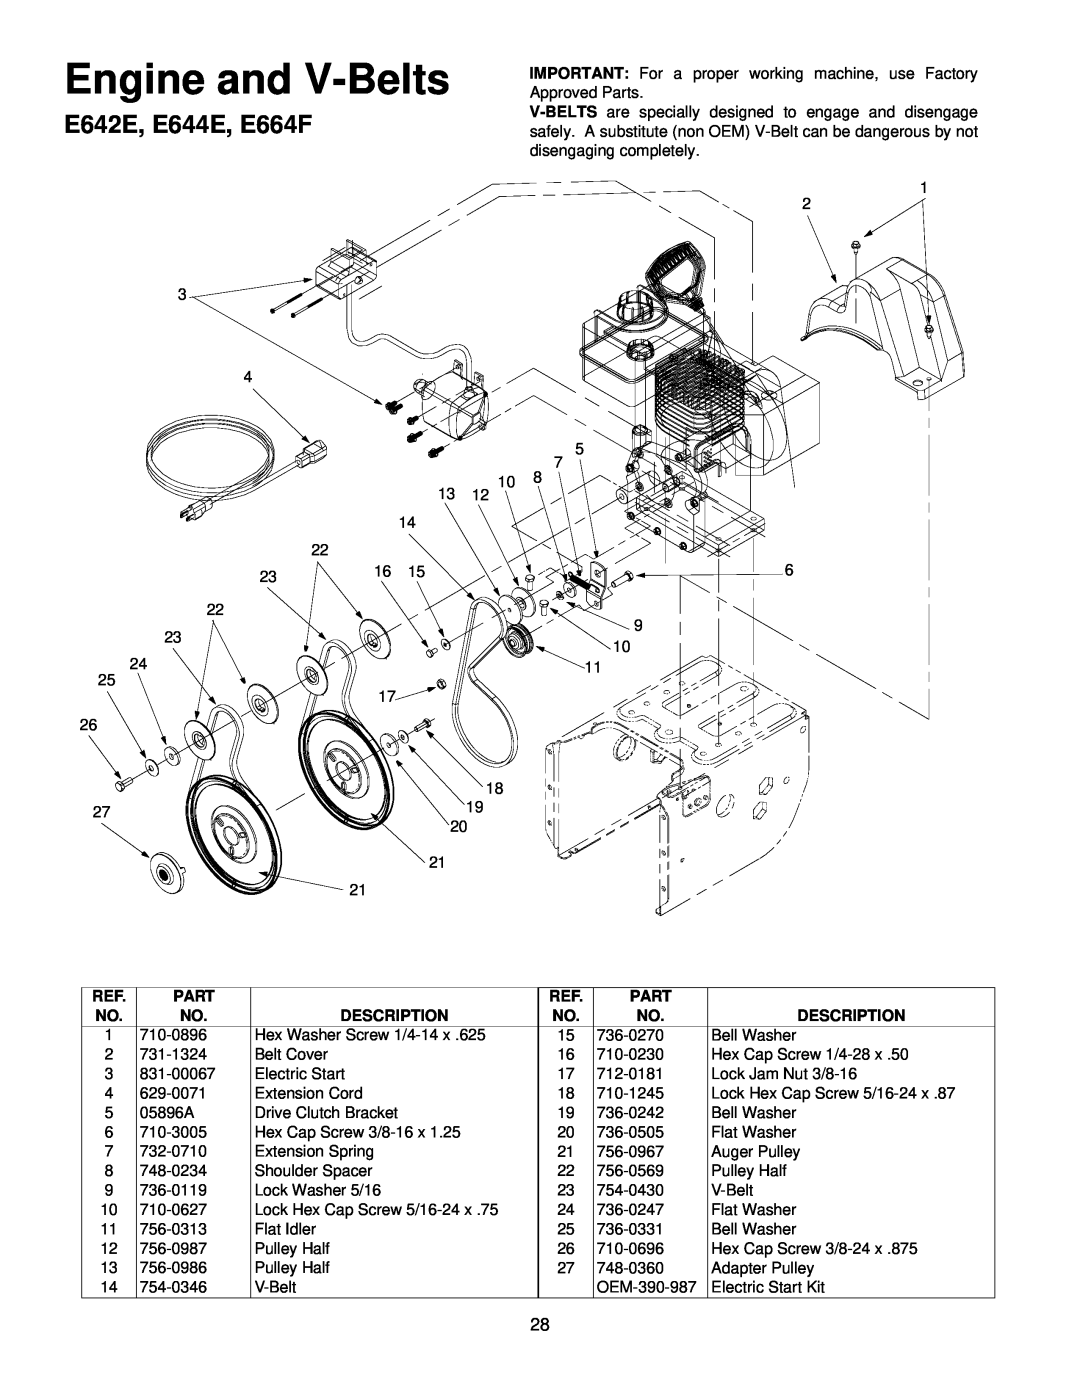 MTD E6A4E, E662H manual E642E, E644E, E664F, Engine and V-Belts 